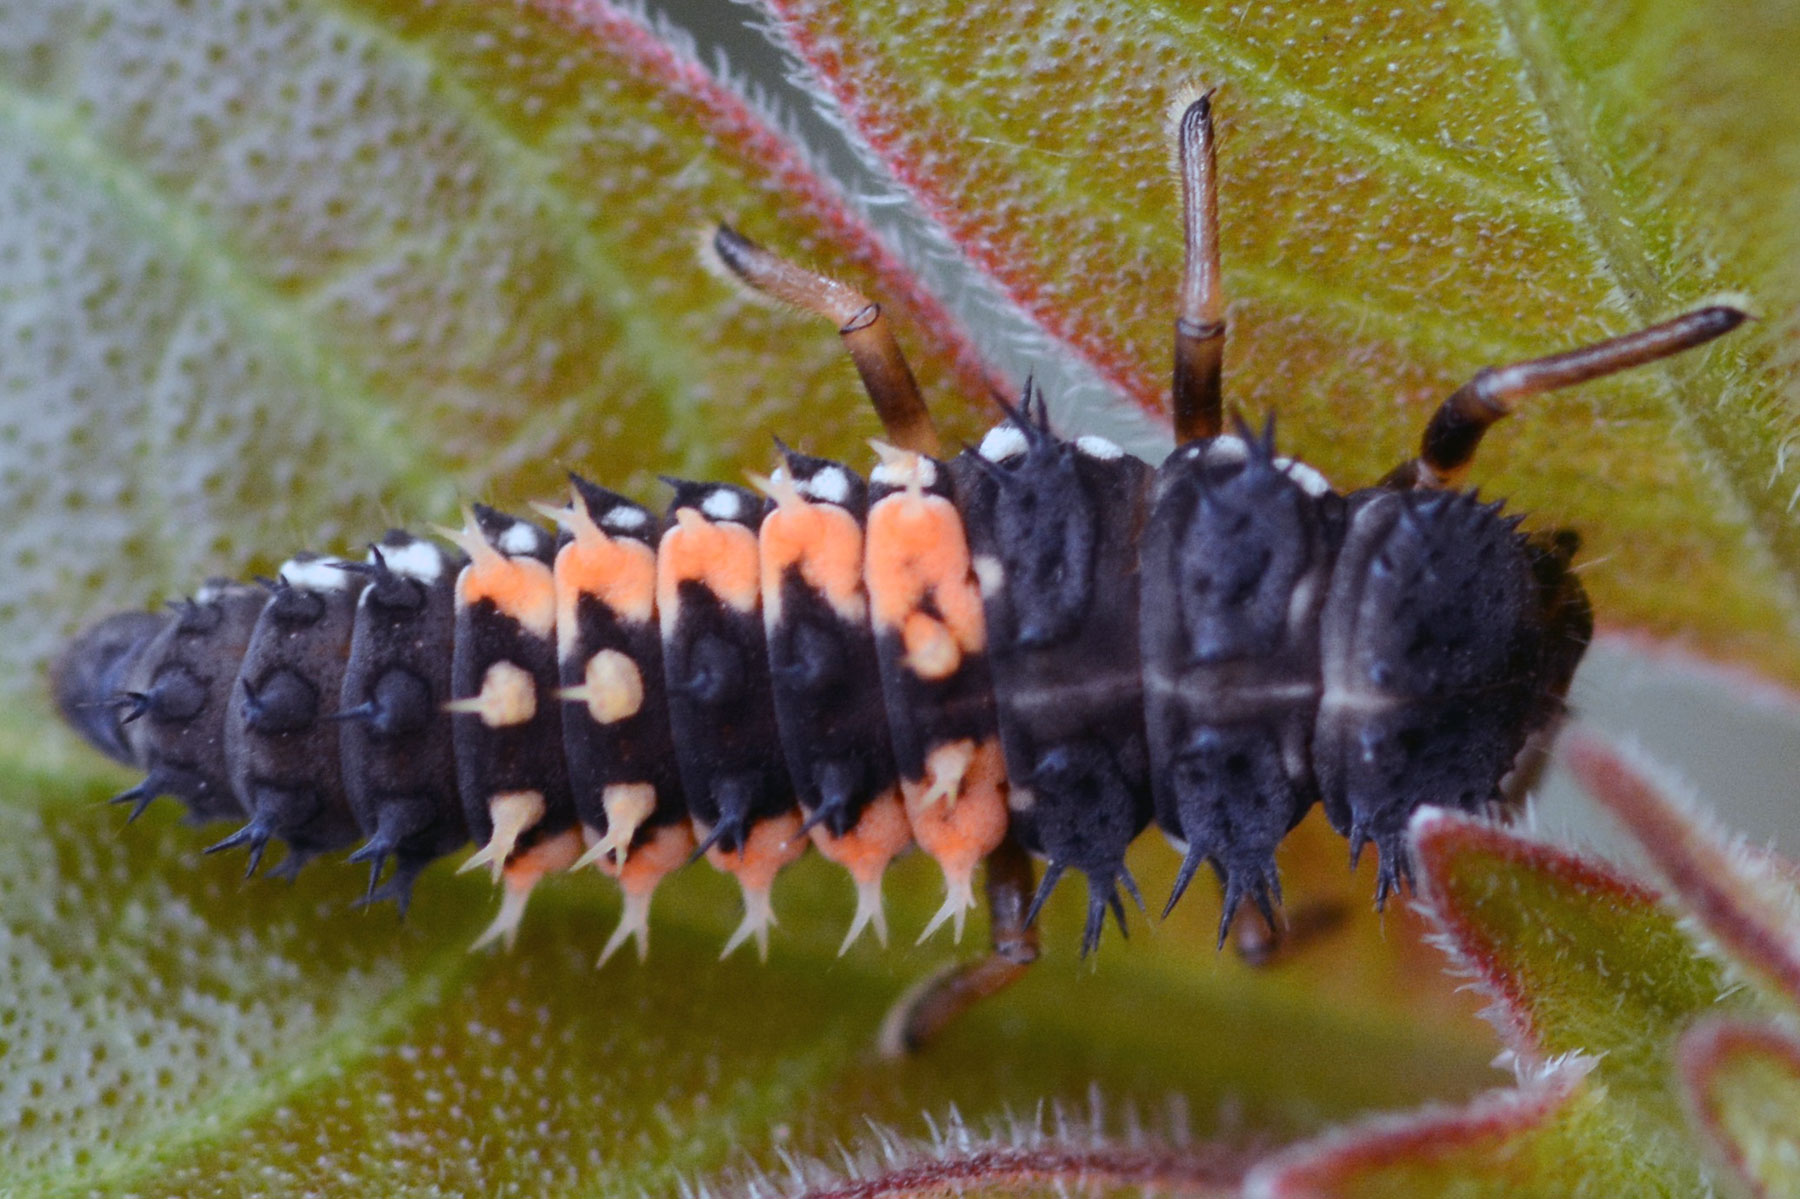 Aasia Ladybug Larva (Harmonia axyridis)